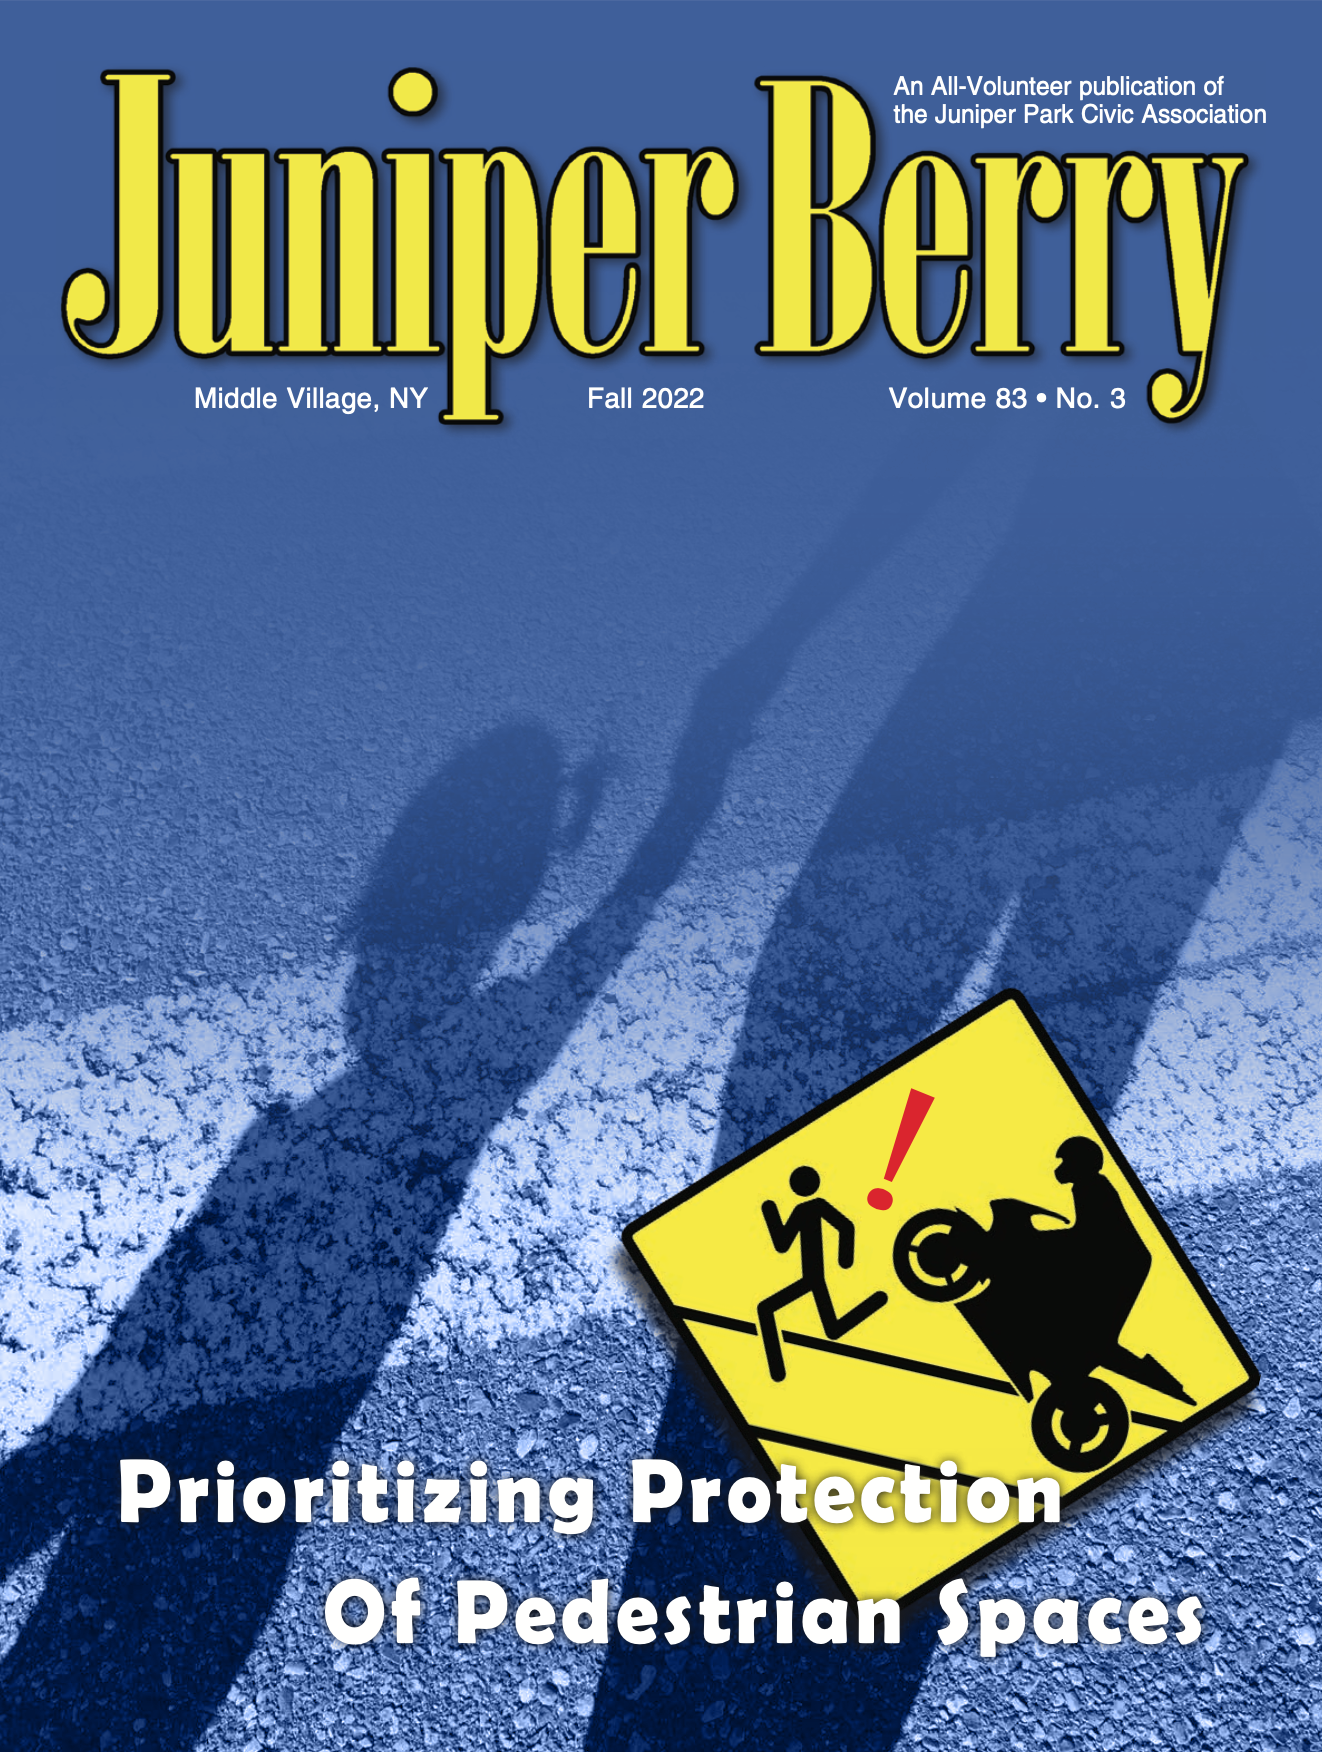 The Juniper Berry September 2022 Cover